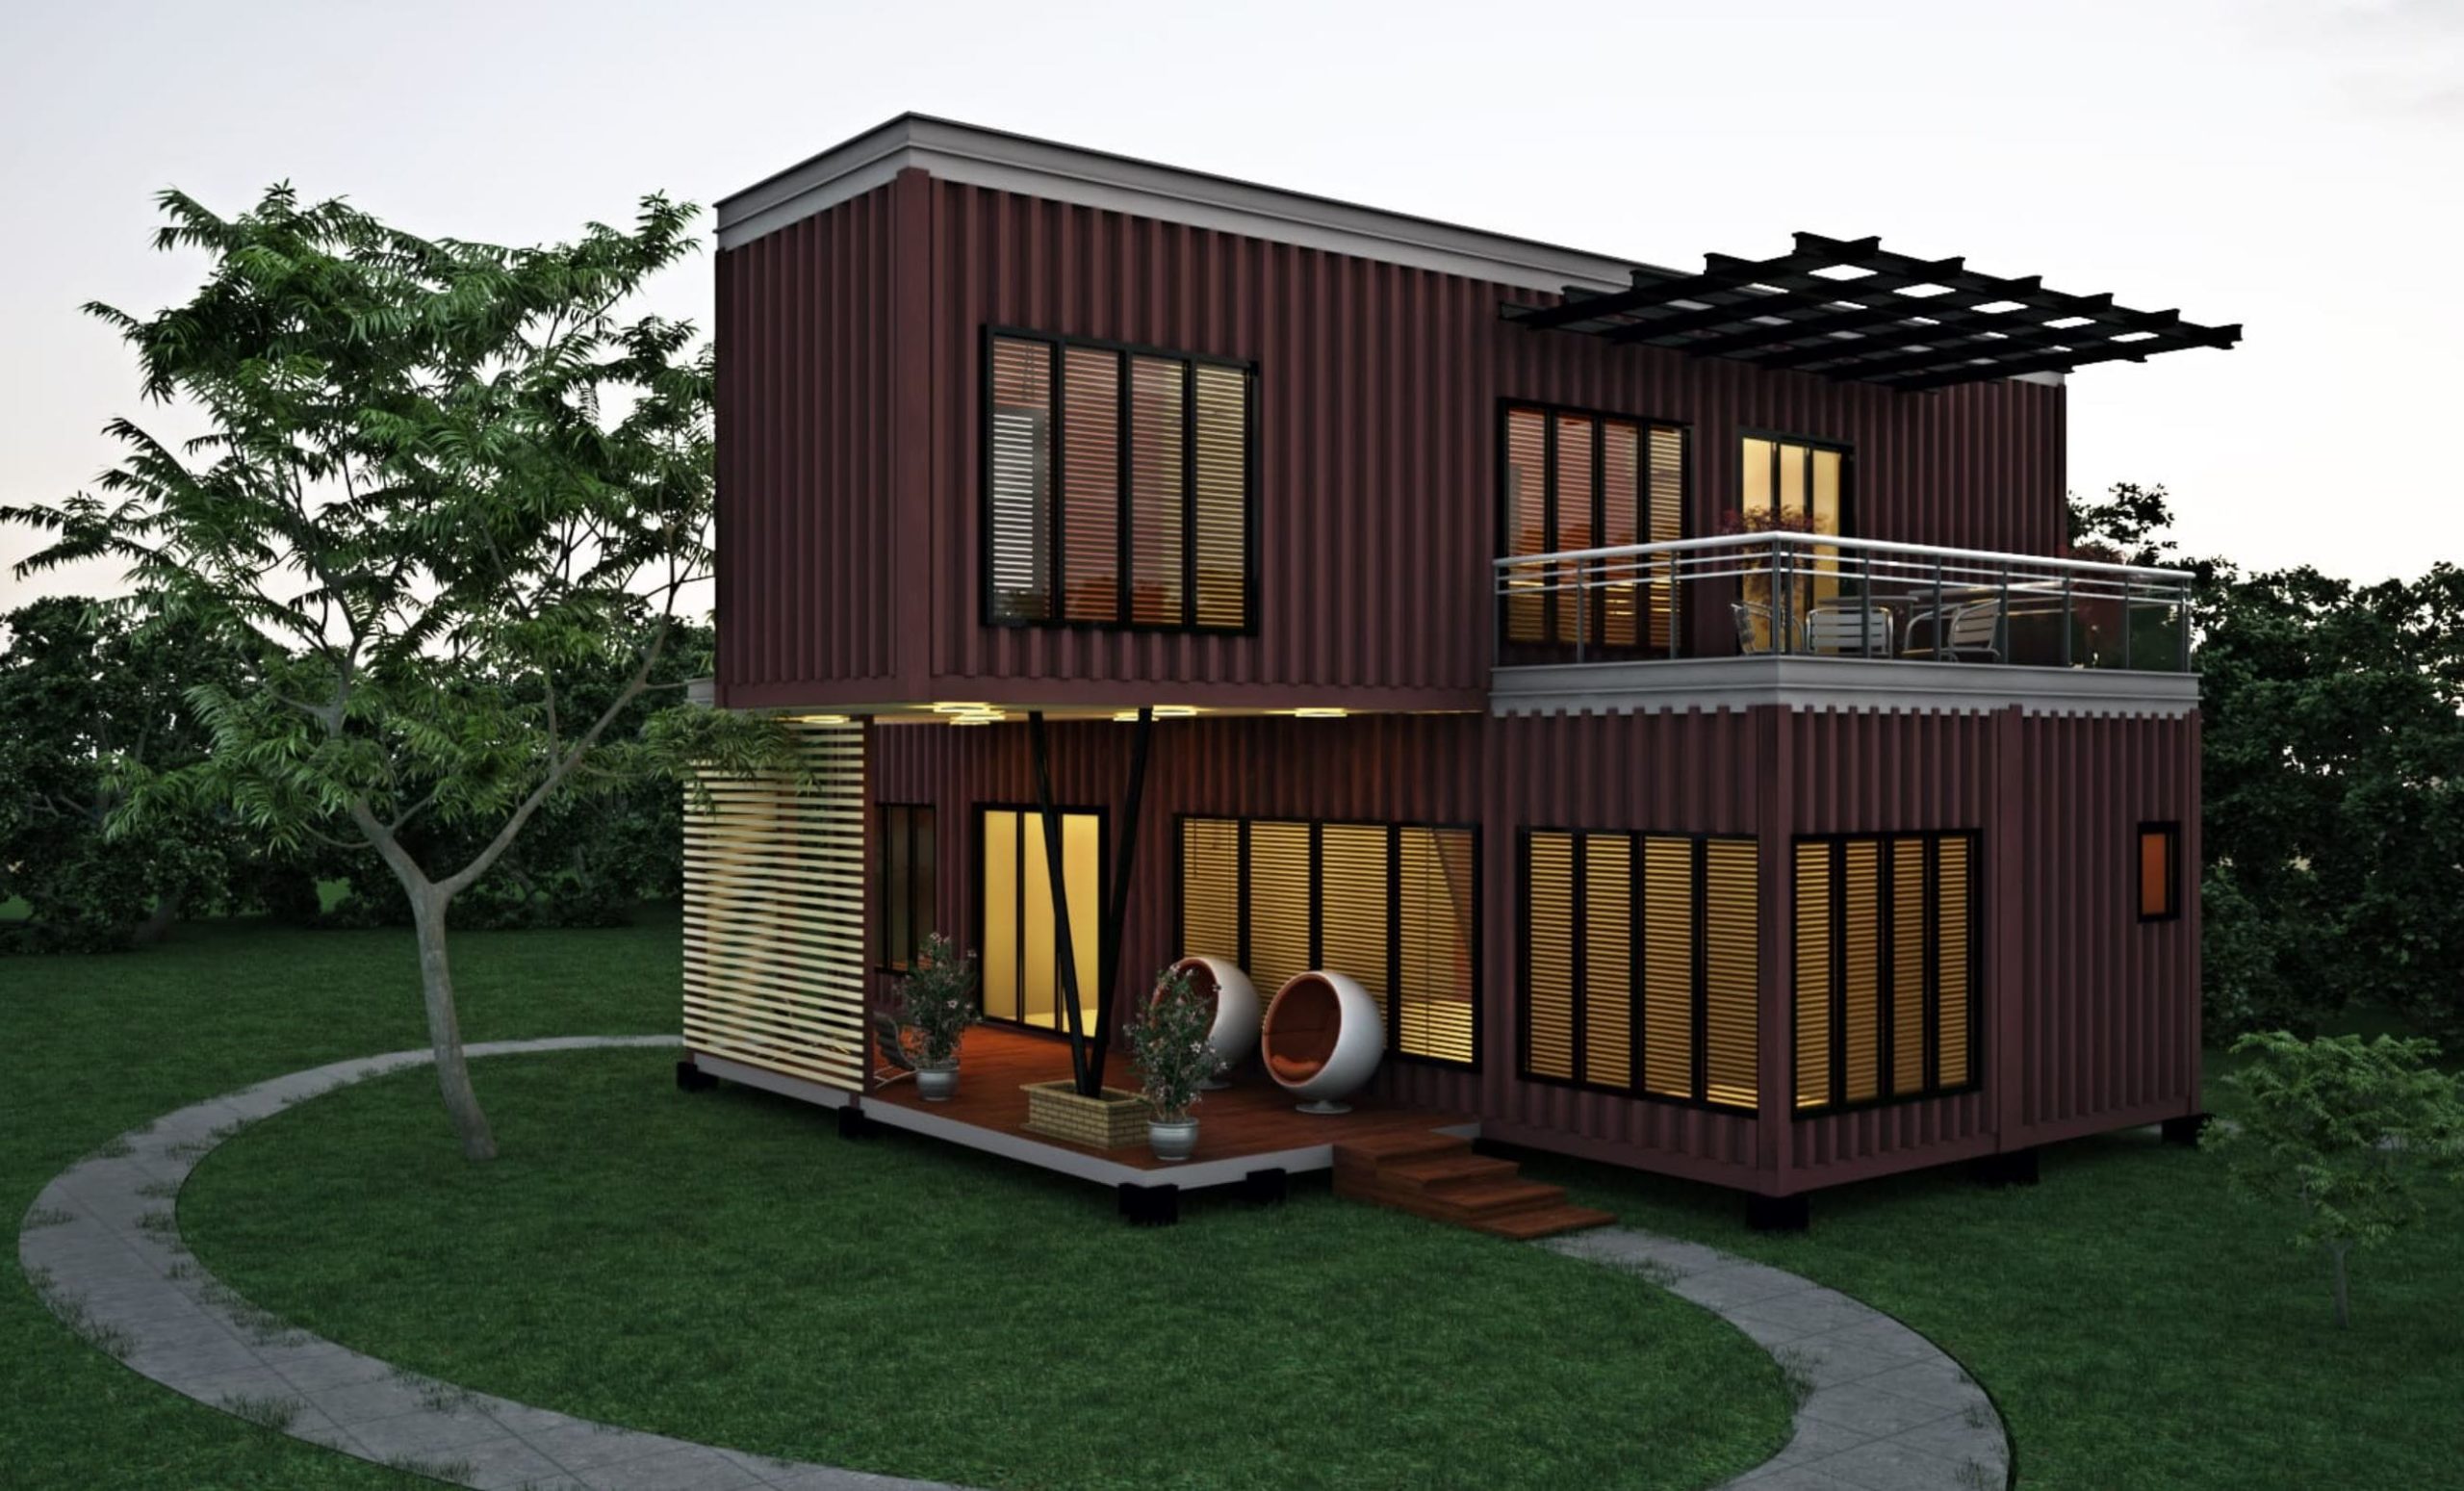 "Tiny House - Große Möglichkeiten: Entdecke die Vielfalt der kompakten Wohnform!"